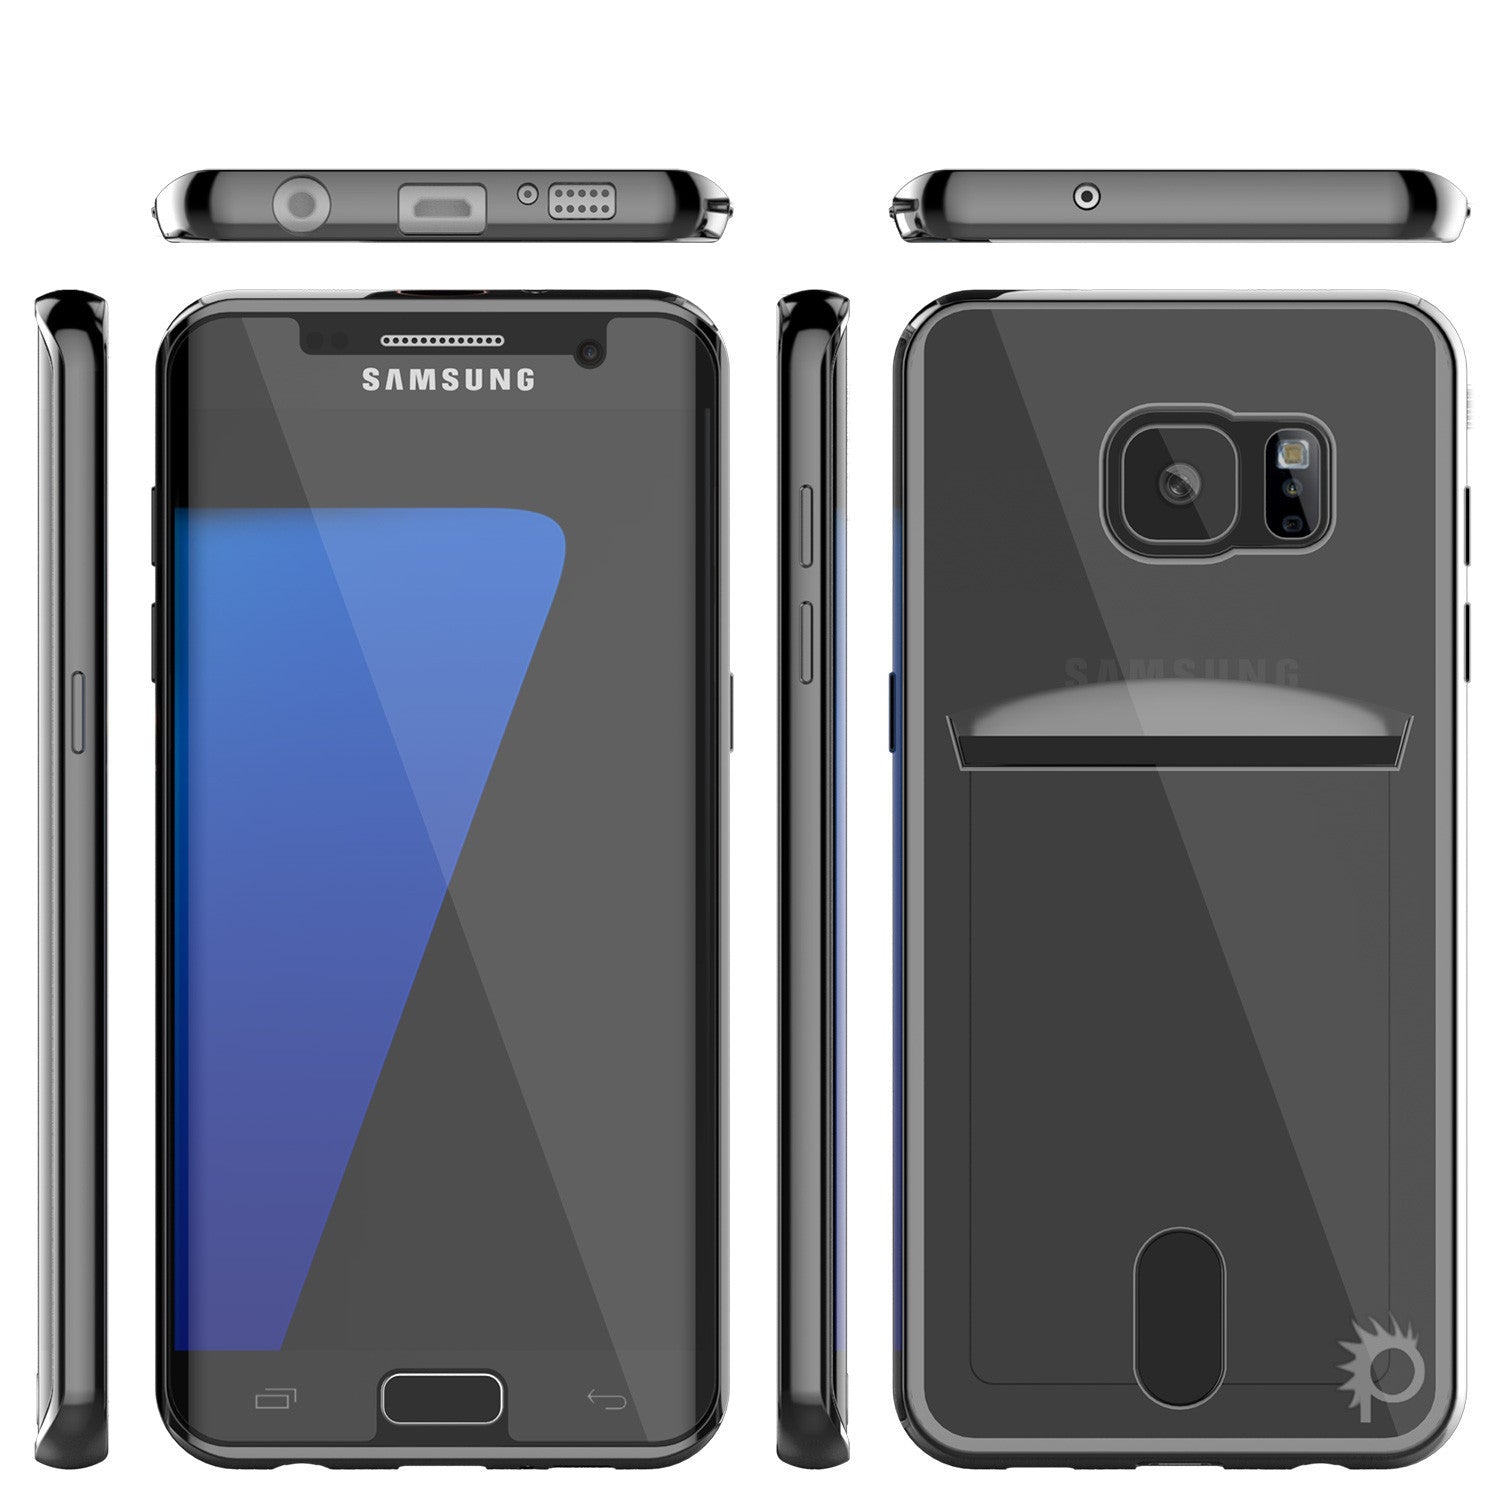 PUNKCASE - Lucid Series Premium Impact Case for Samsung S7 Edge | Black